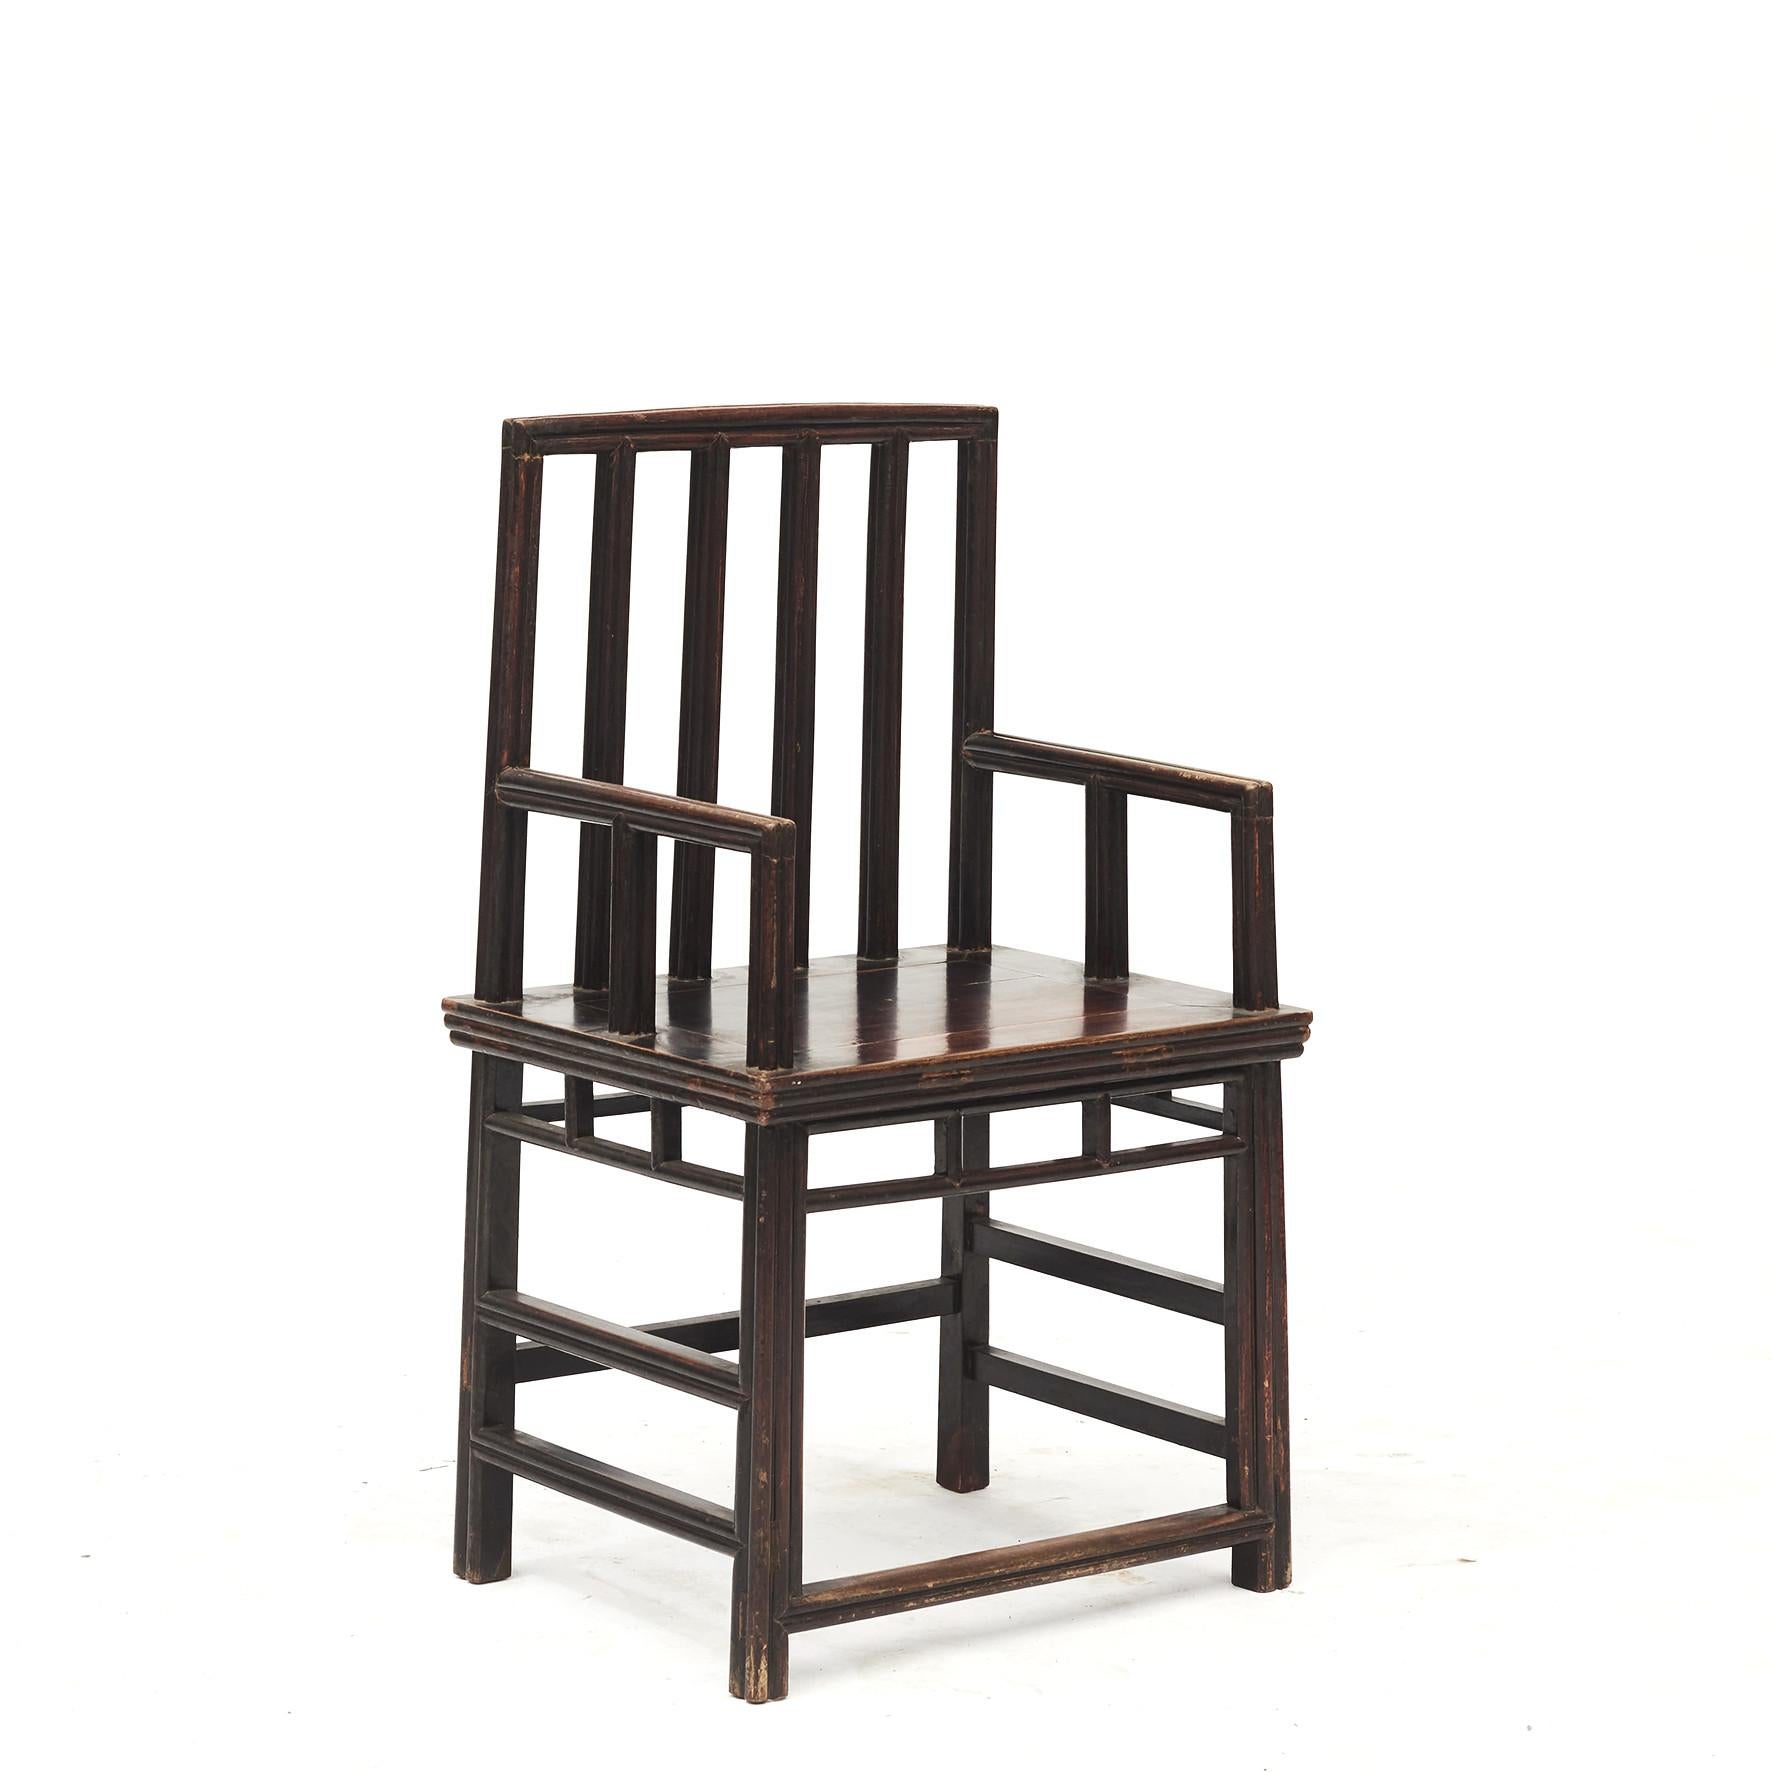 Paar architektonische Sessel in originalem, unberührtem Zustand. Diese Stühle haben ein unverwechselbares Profil mit wunderschönen Linien. Original weinroter Lack.
Aus der Provinz Jiangsu, China, um 1800.

Ein sehr dekoratives Sesselpaar, aber